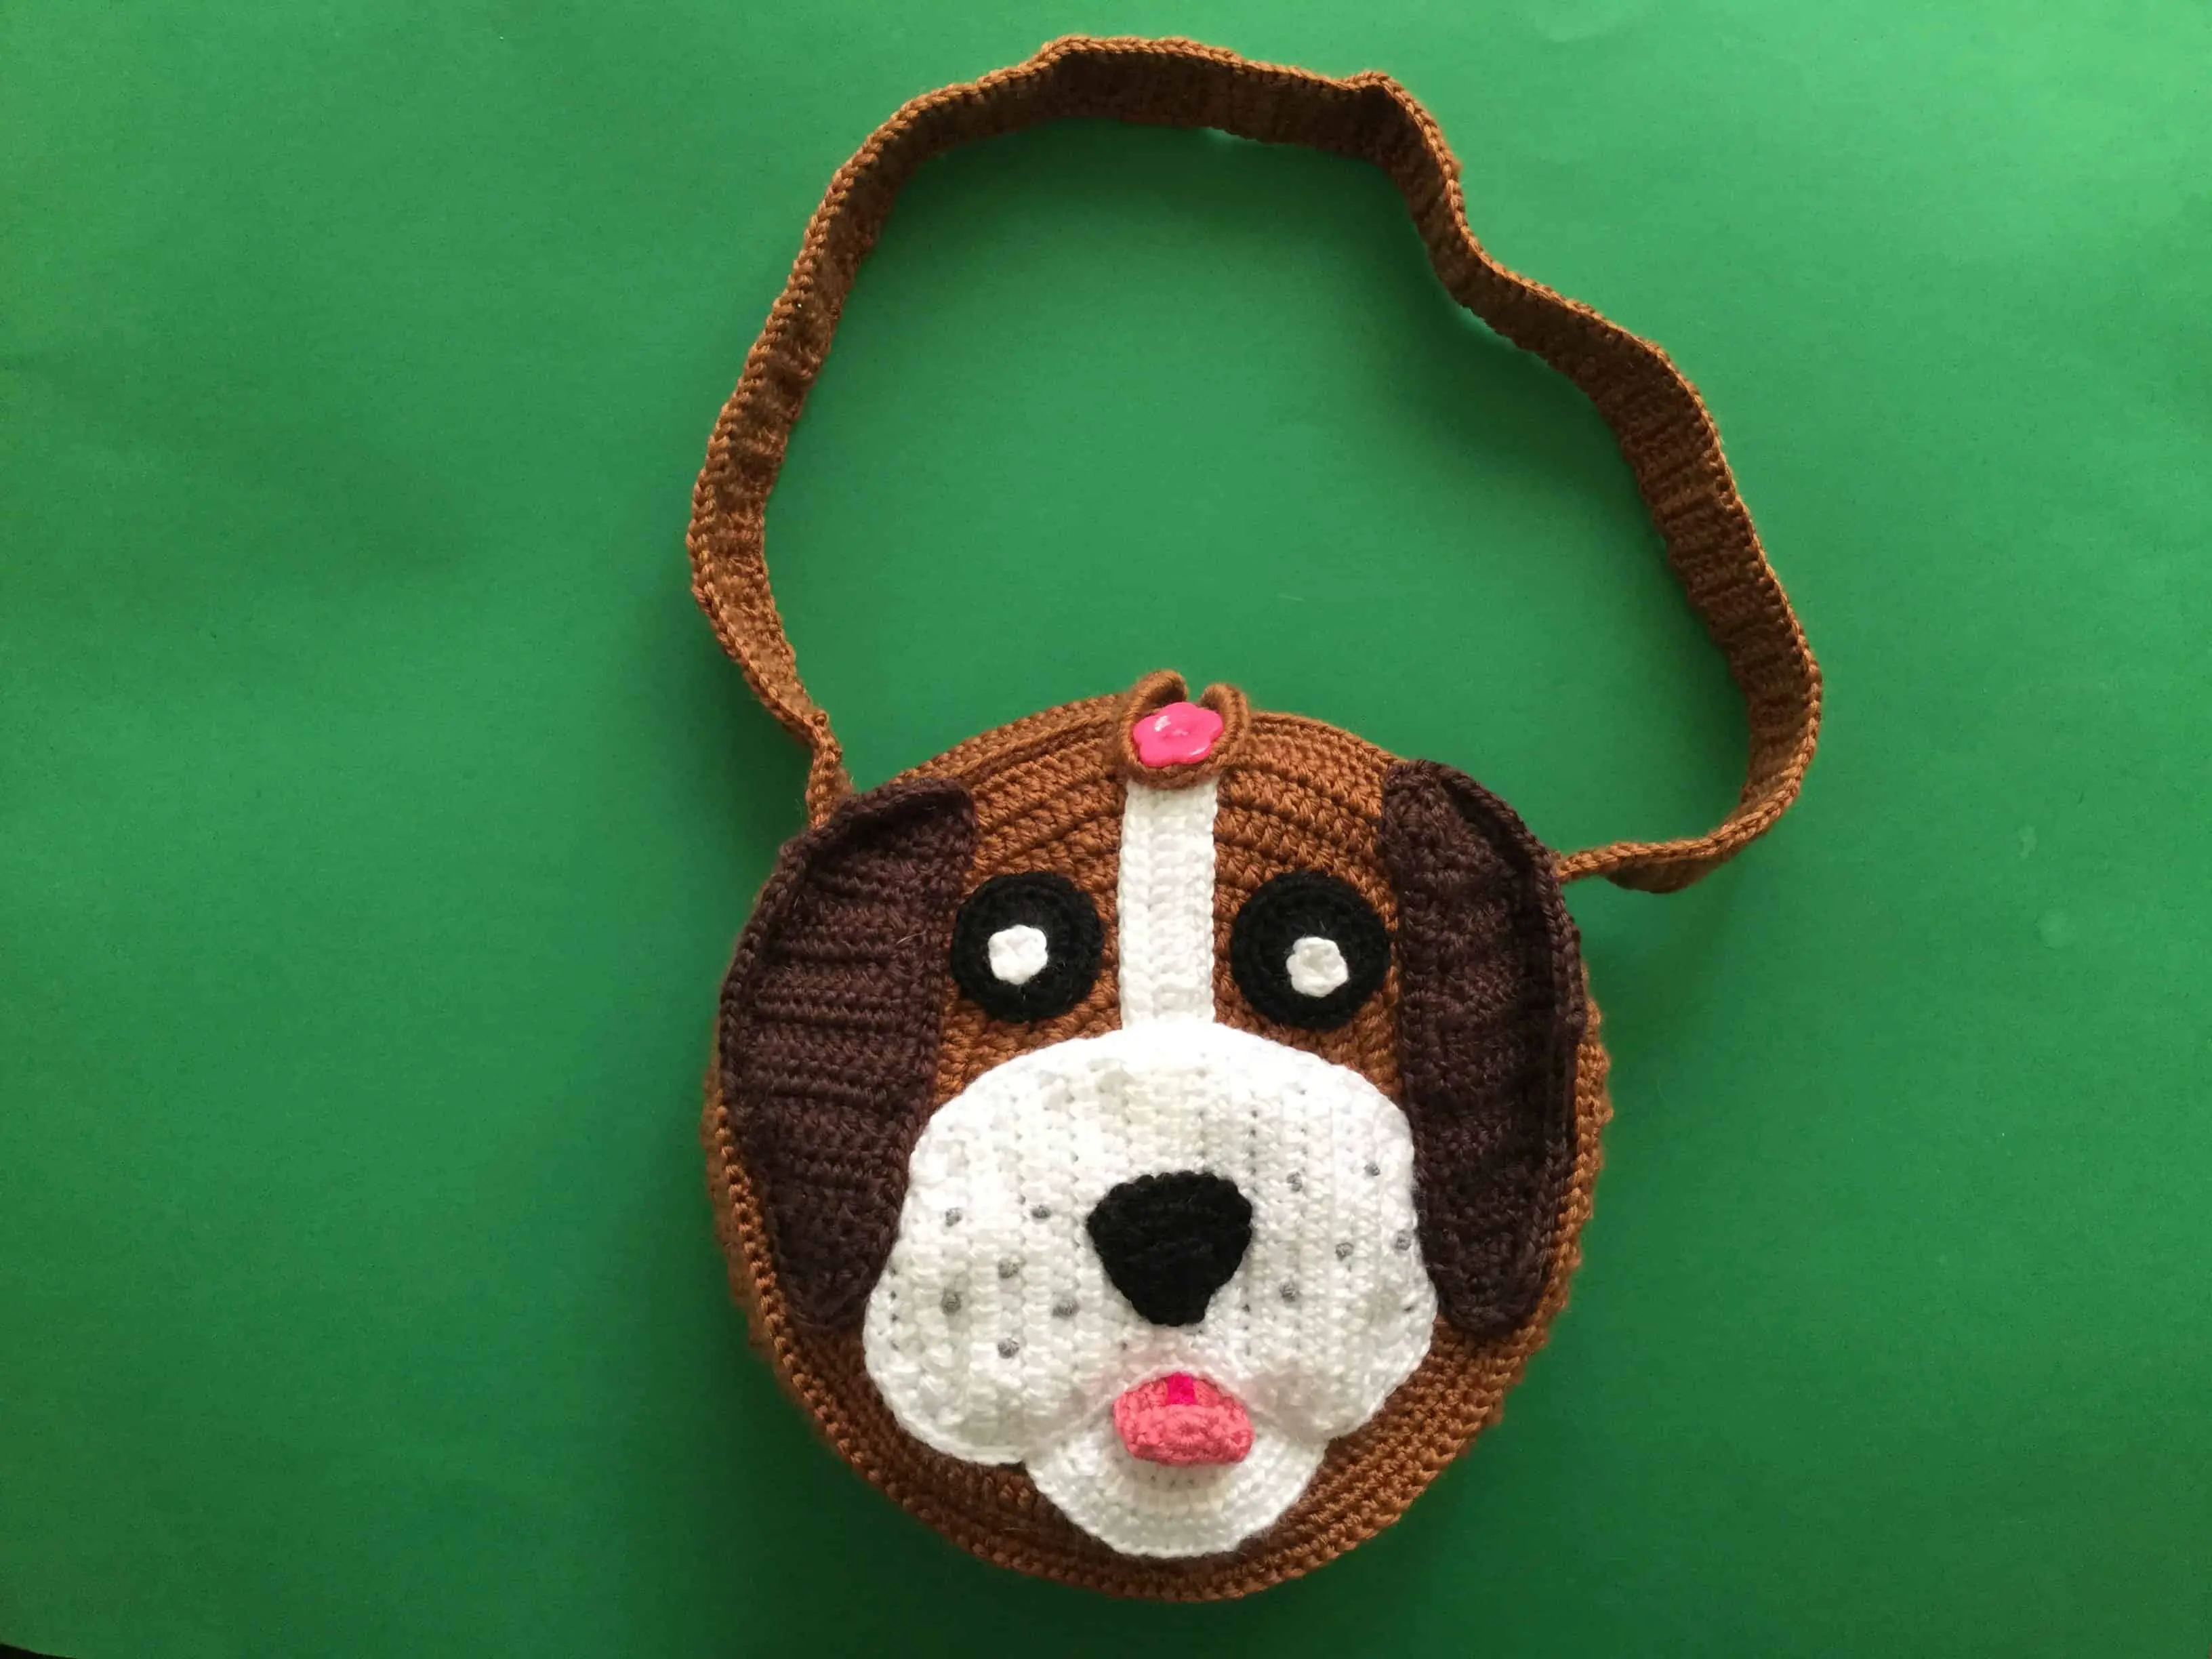 Finished crochet dog bag landscape